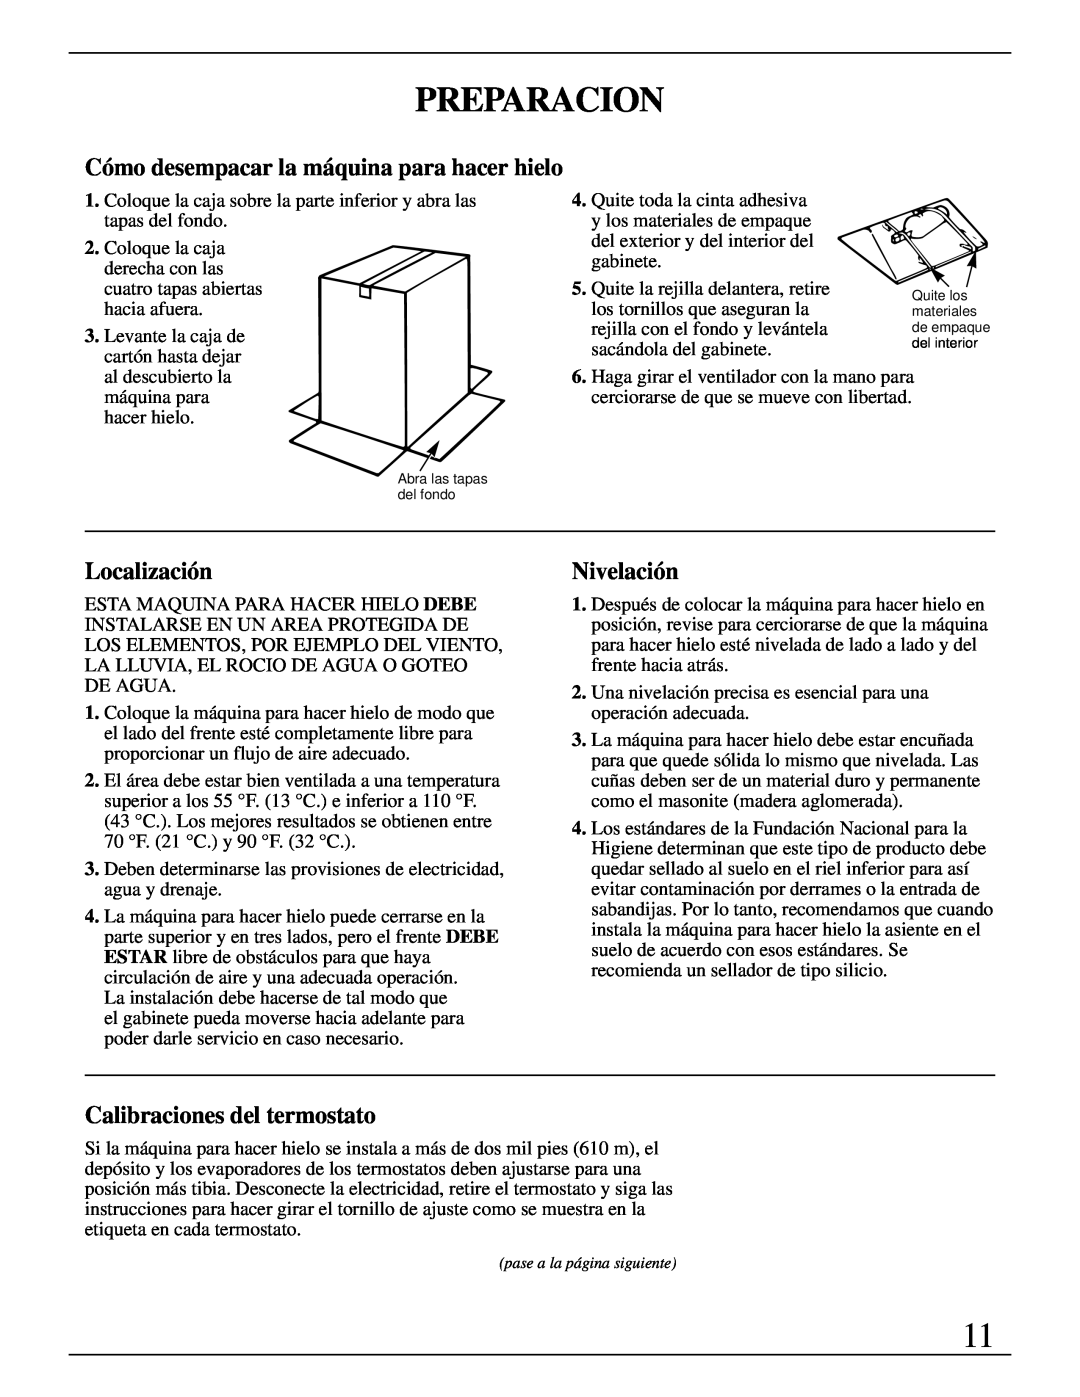 GE Monogram ZDIW50 installation instructions Preparacion, Localización, Nivelación, Calibraciones del termostato 